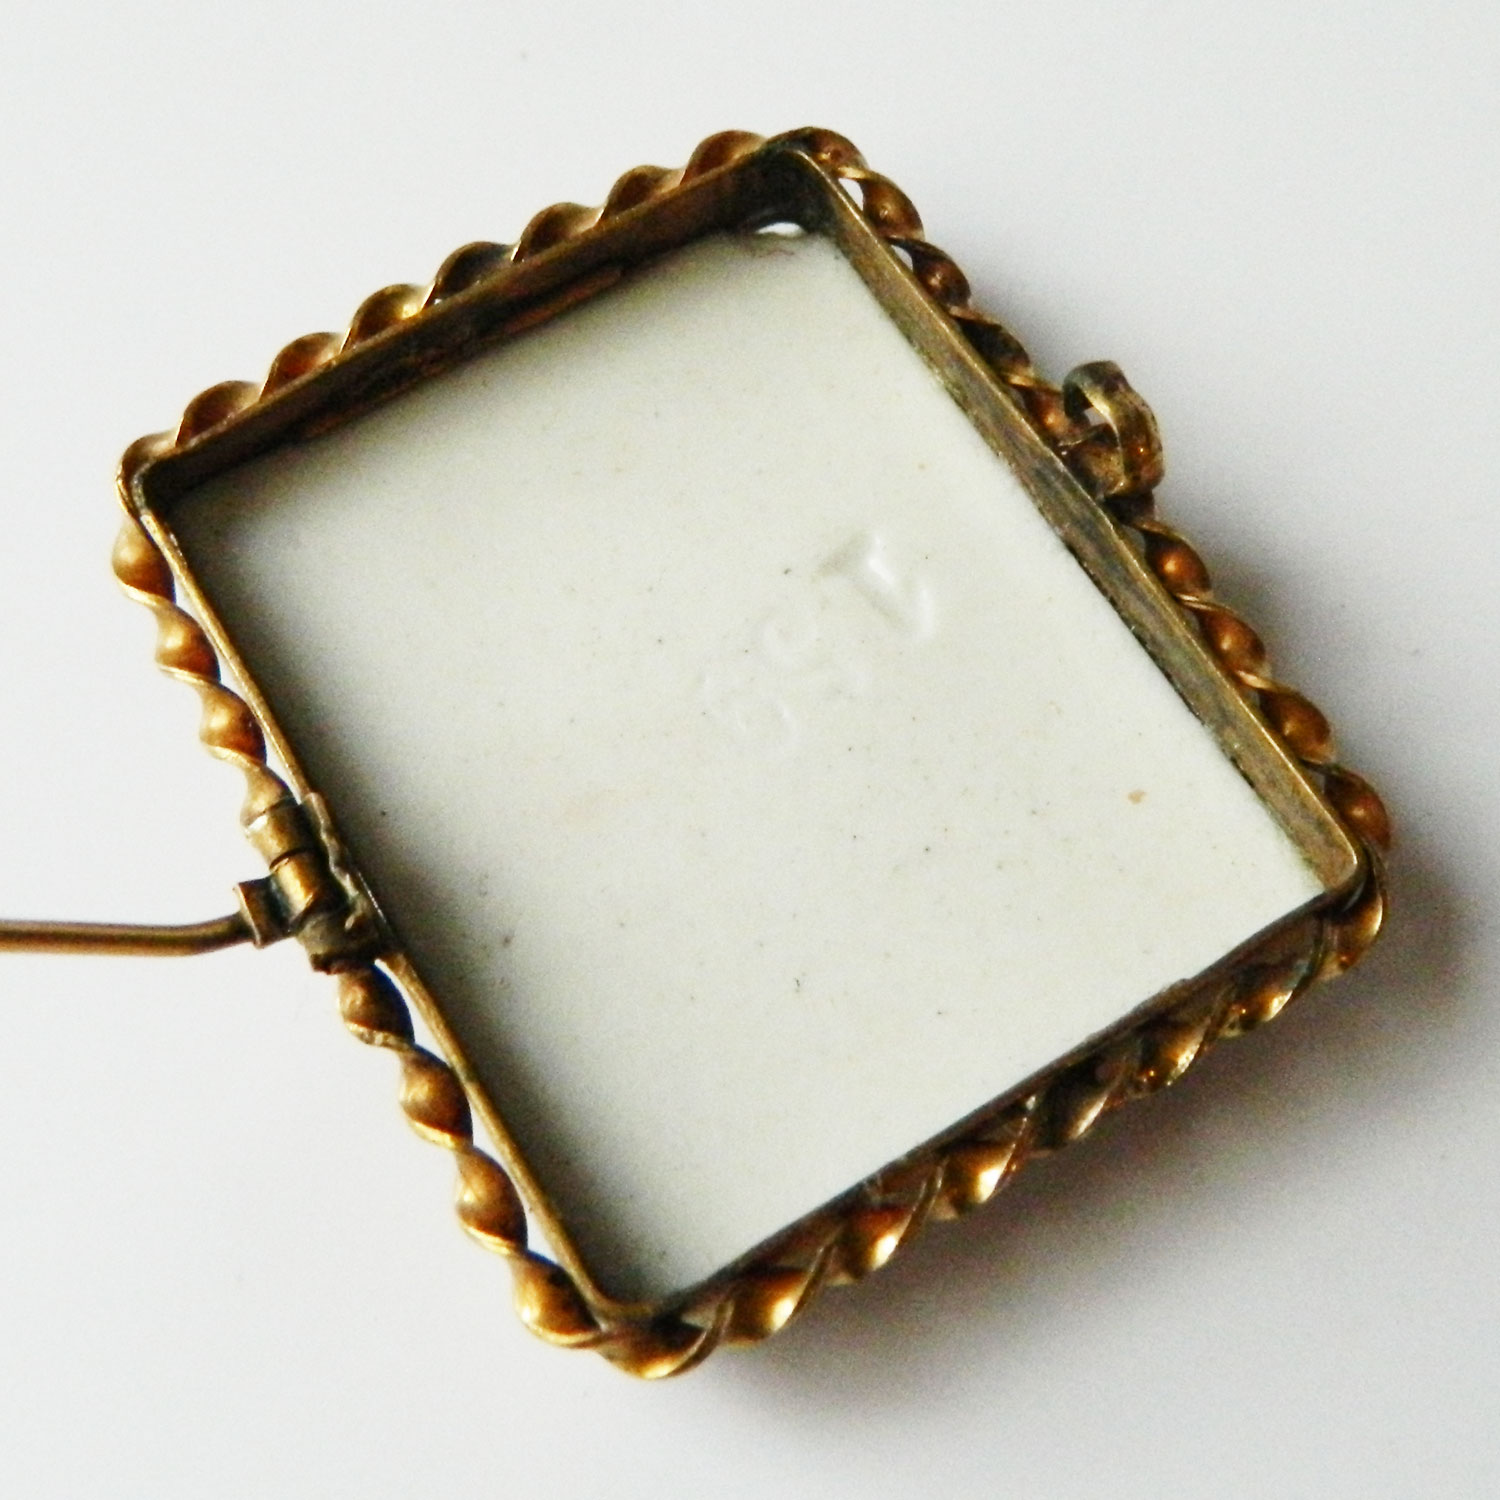 Ceramic cameo brooch